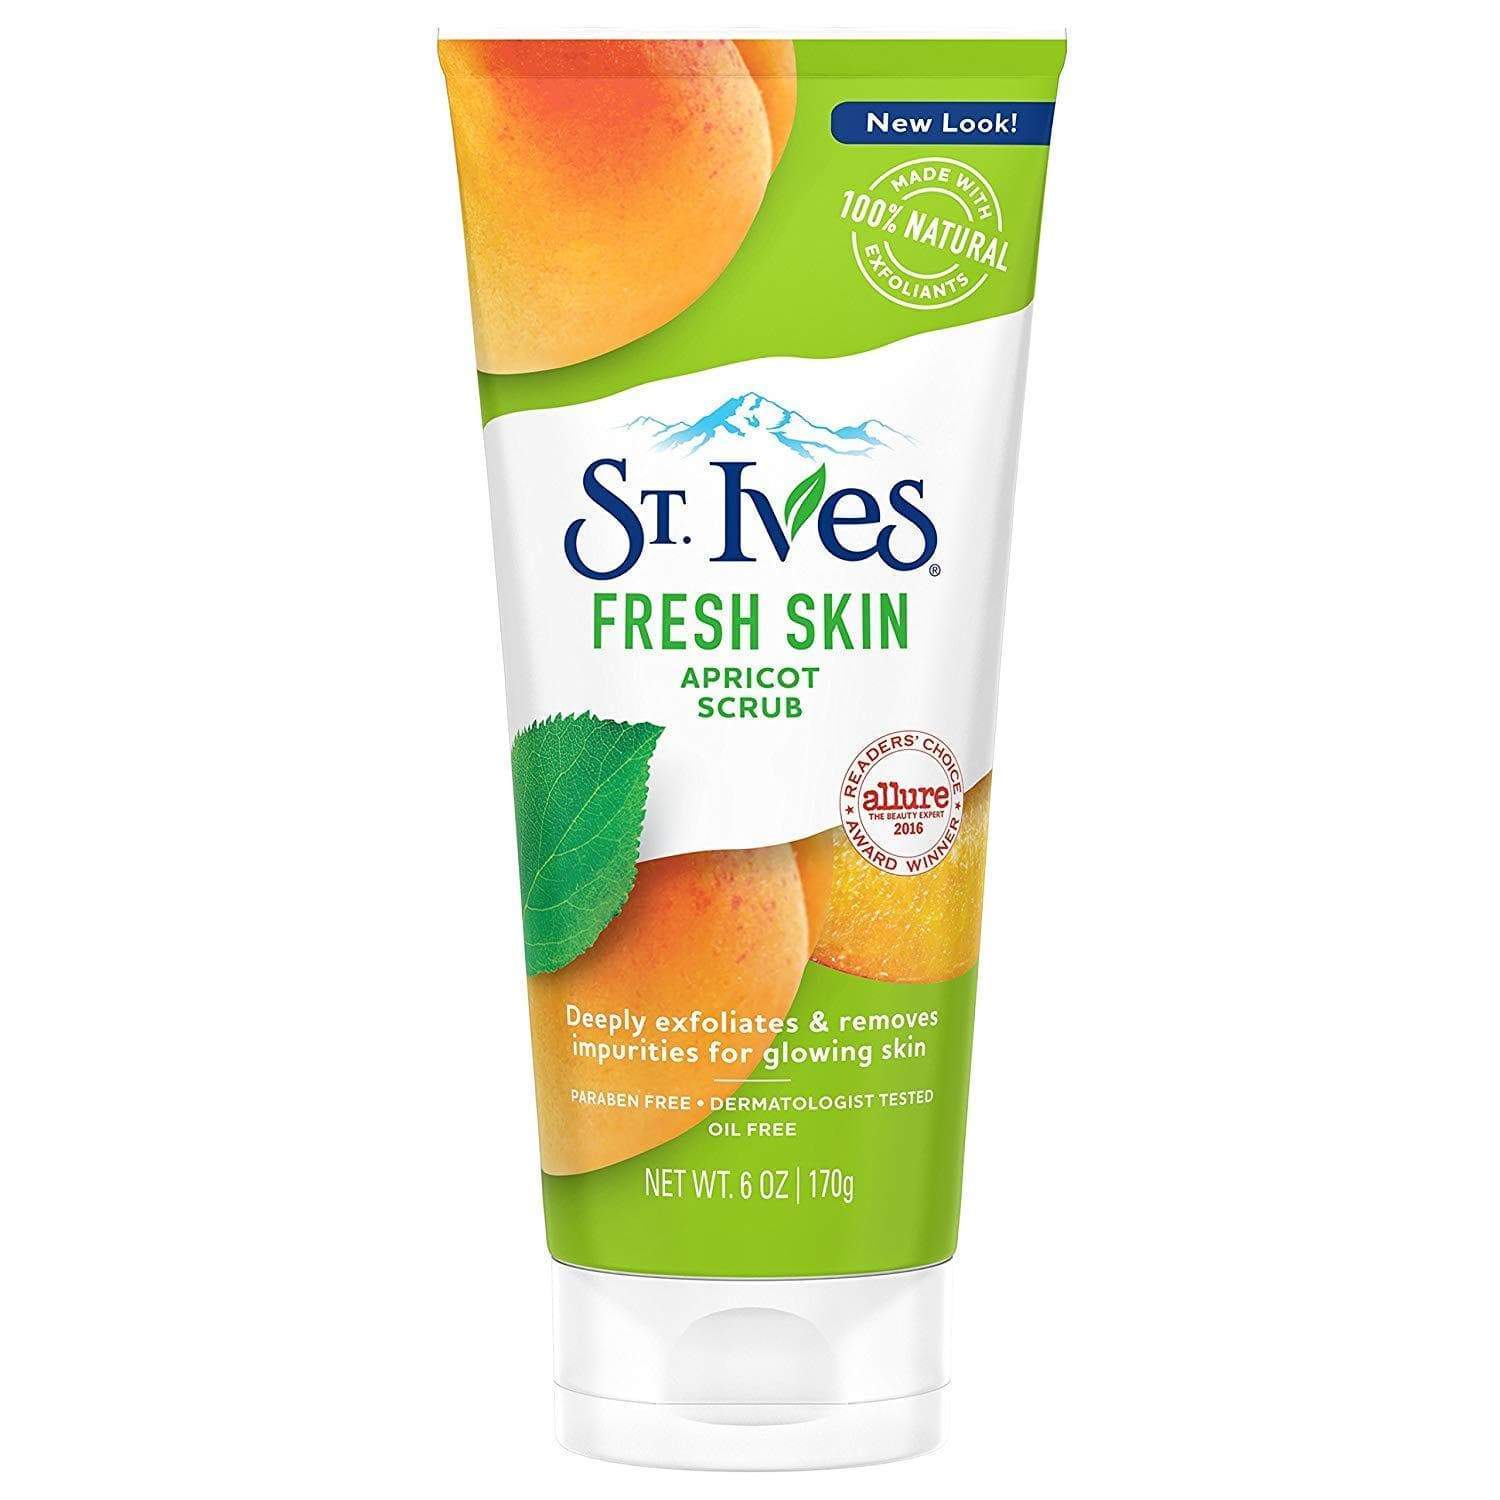 St Ives Fresh Skin Apricot Scrub Minoustore